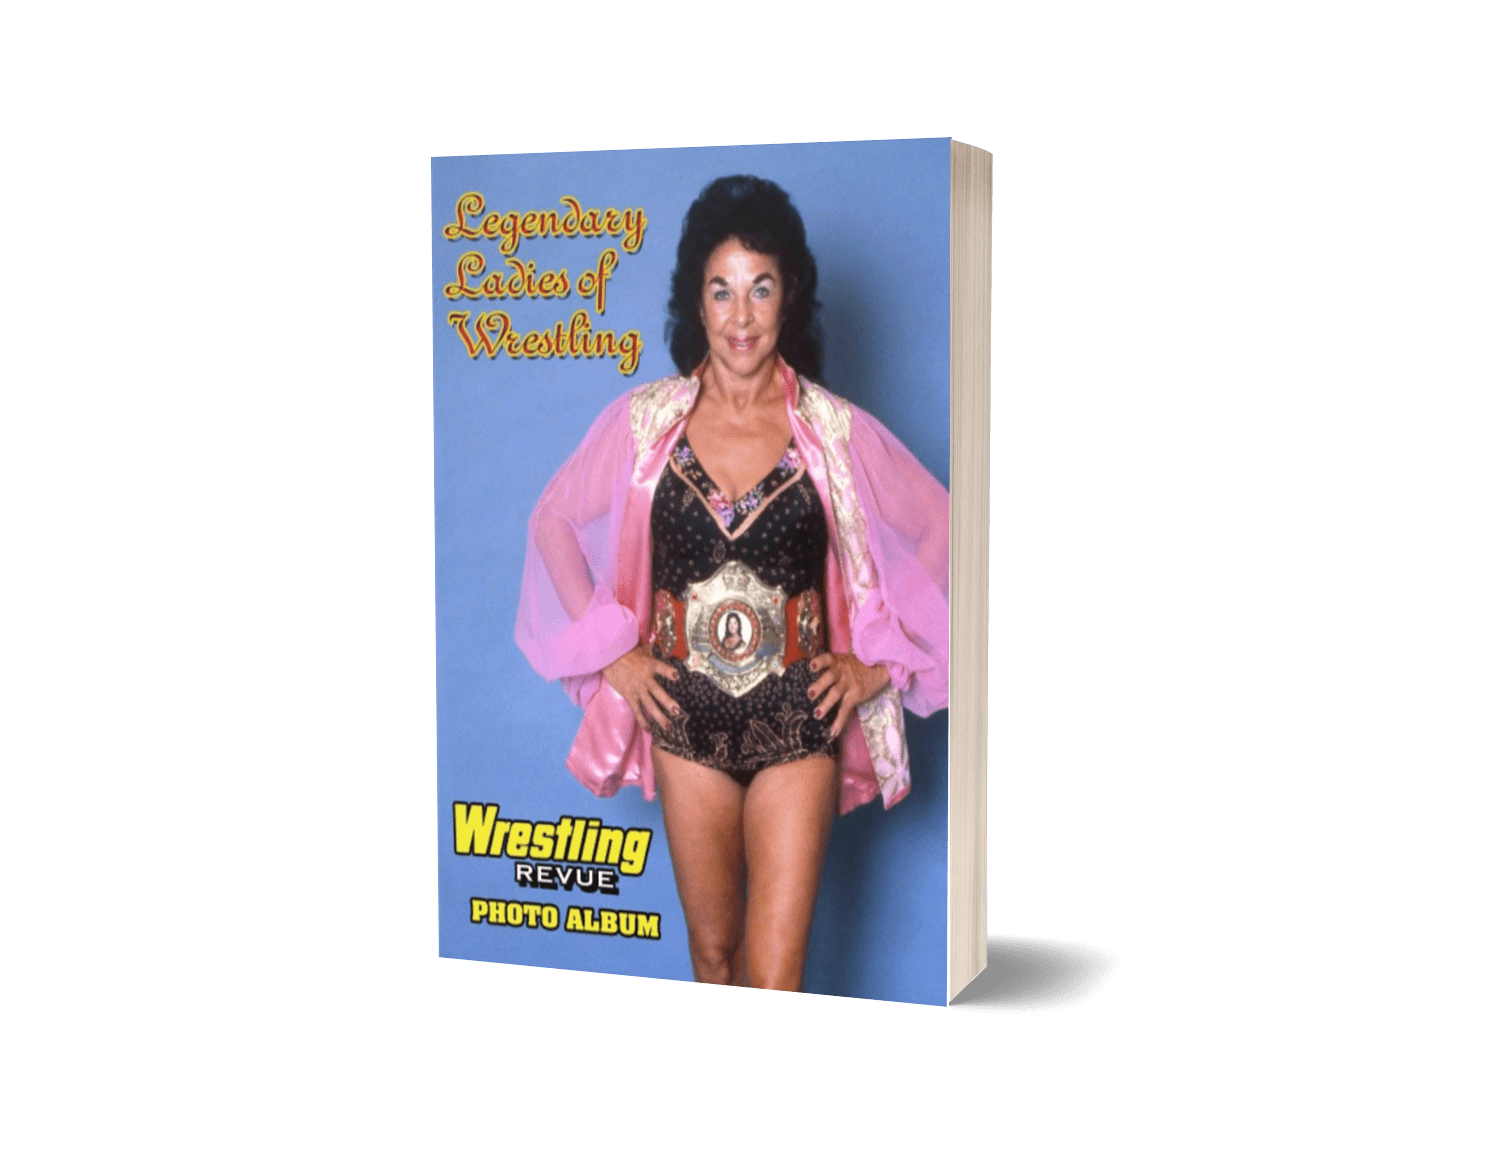 Legendary Ladies of Wrestling Photo Album